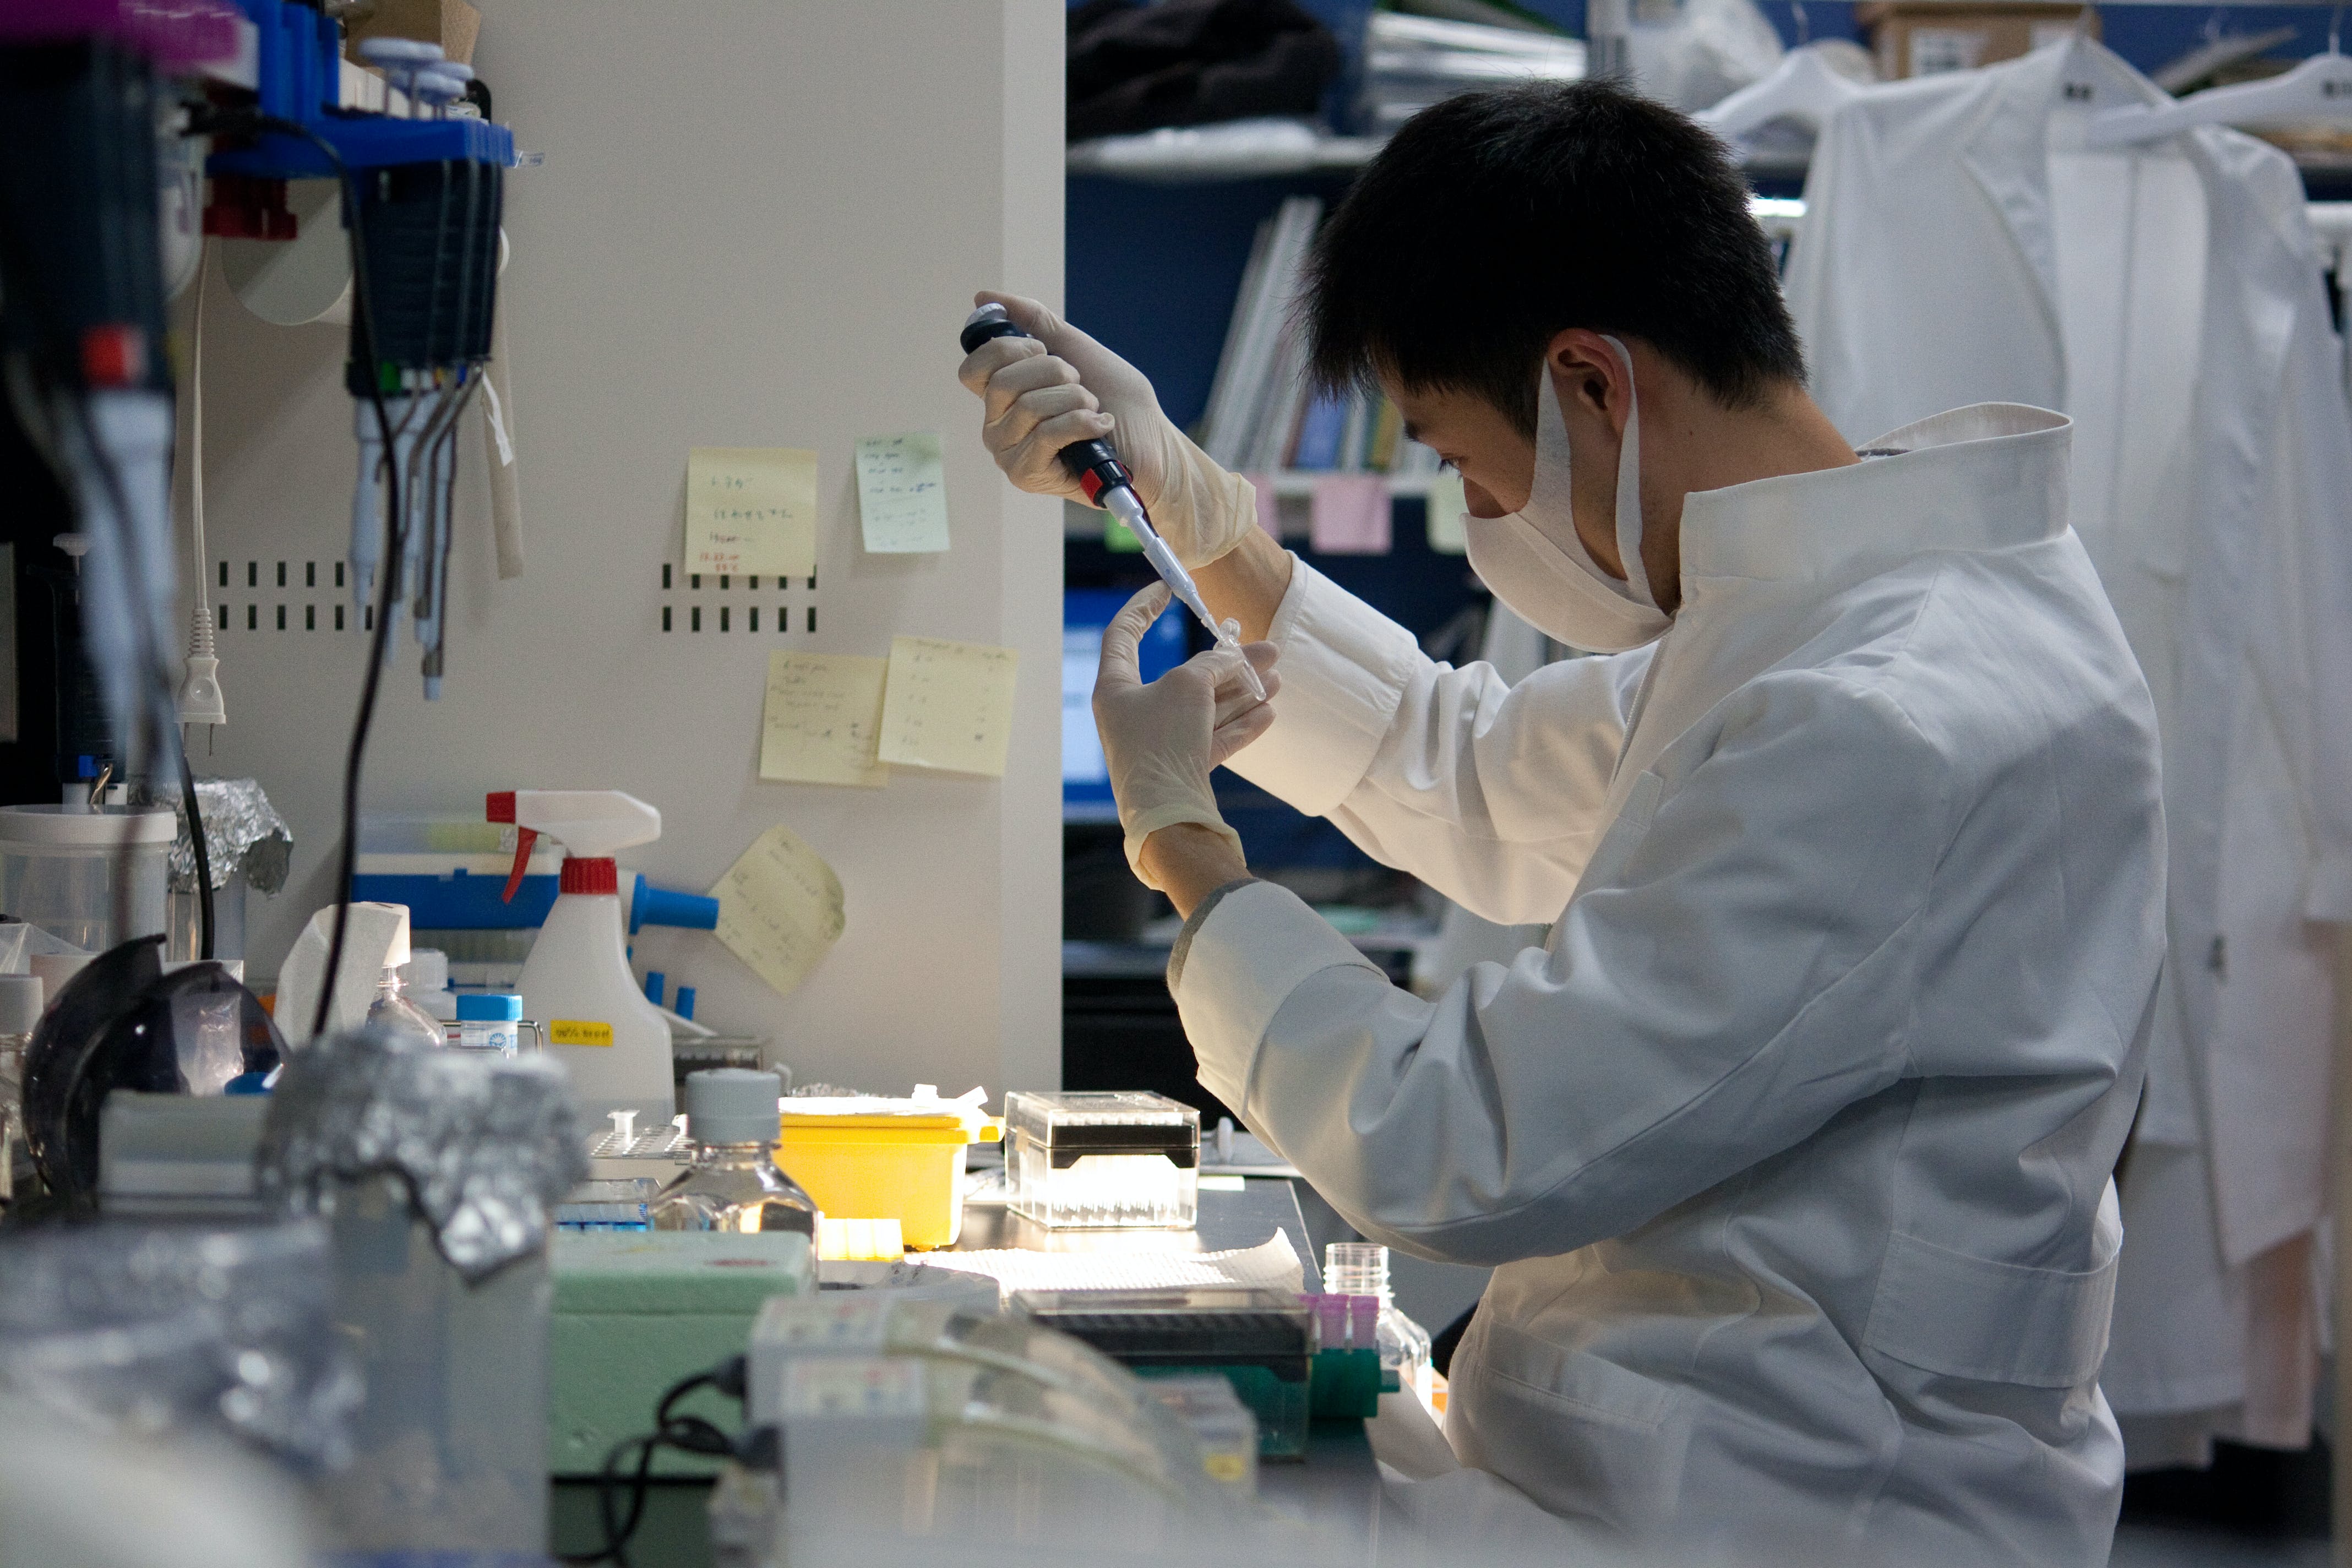 オープンラボで実験を行う様子 ©京都大学iPS細胞研究所